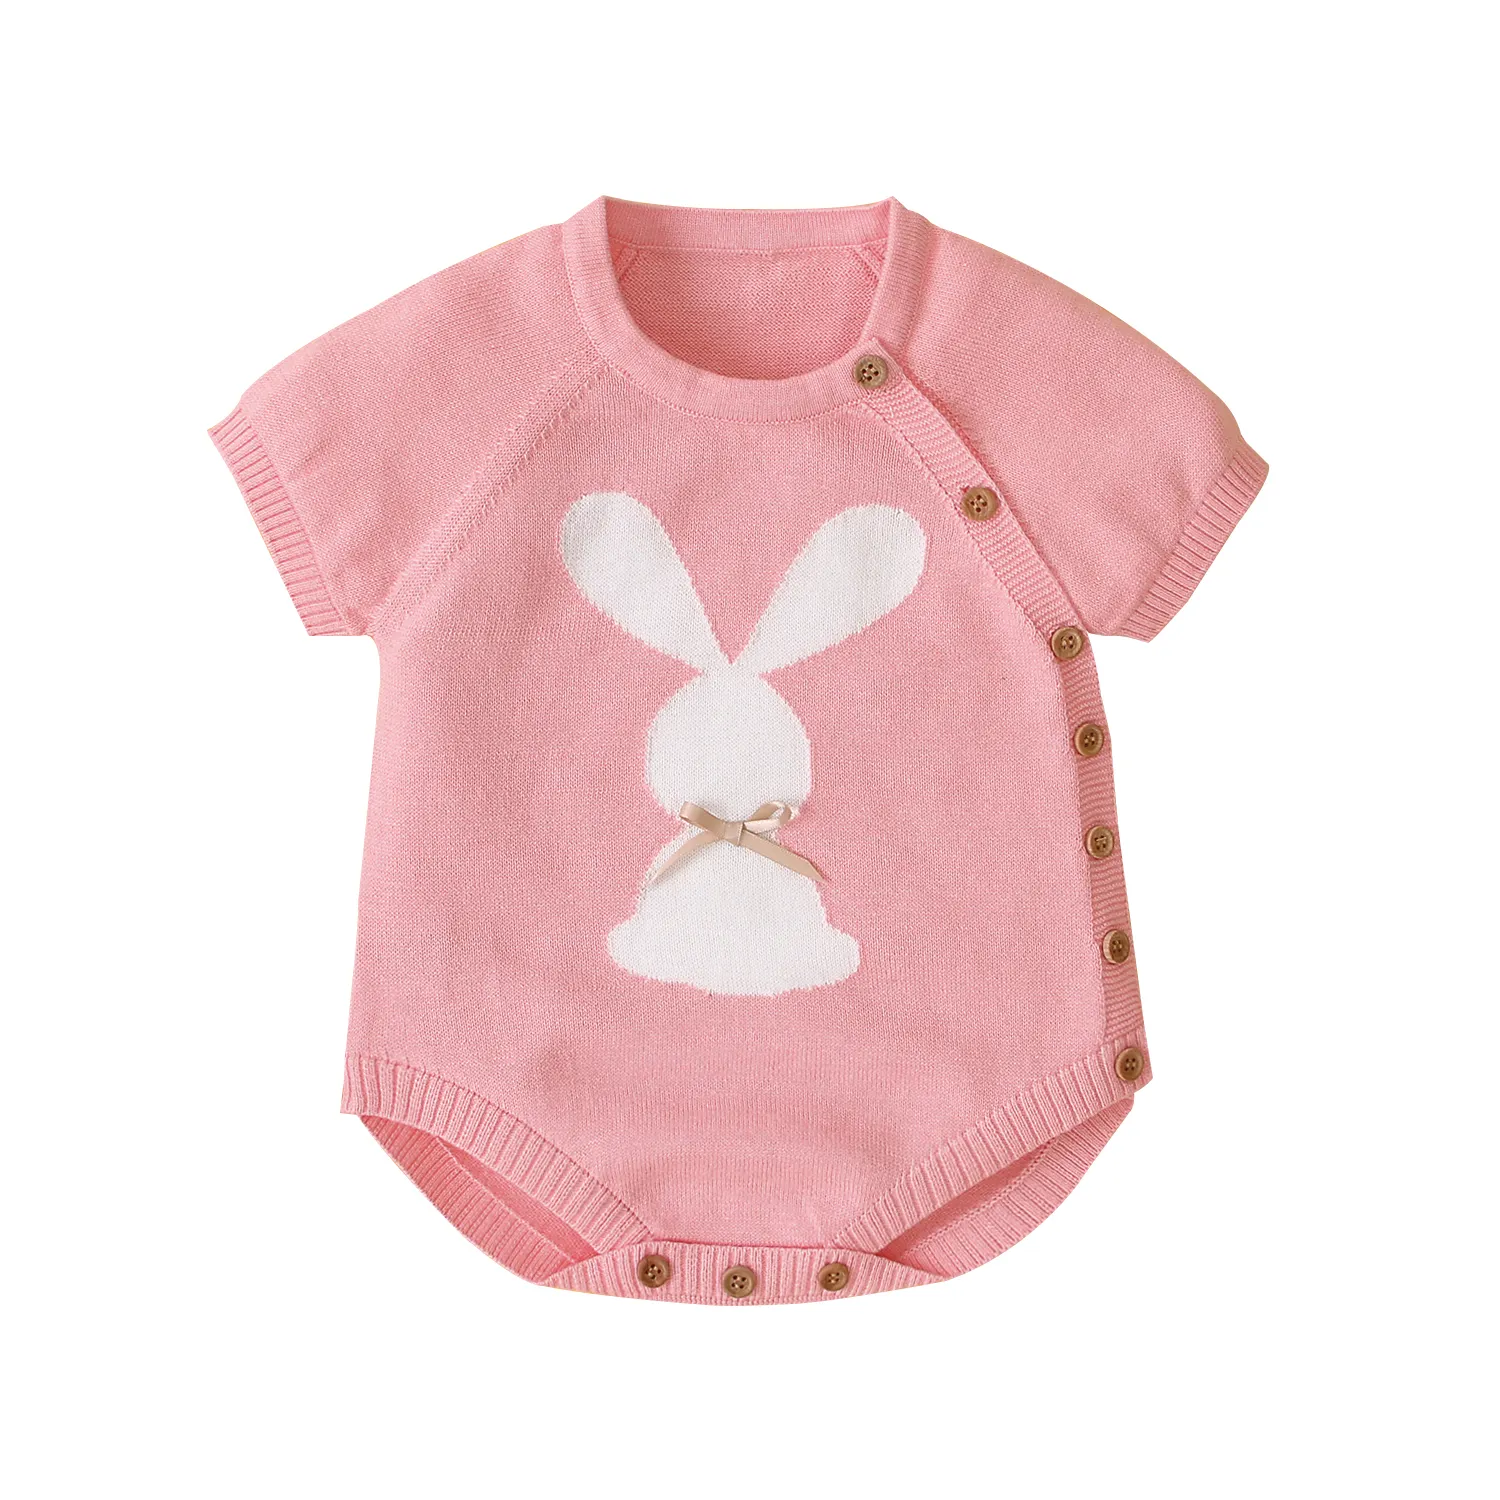 Bulk Buy Baby Girl Nettes Kaninchen Design 100% Baumwolle Kleidung Stram pler für den Sommer